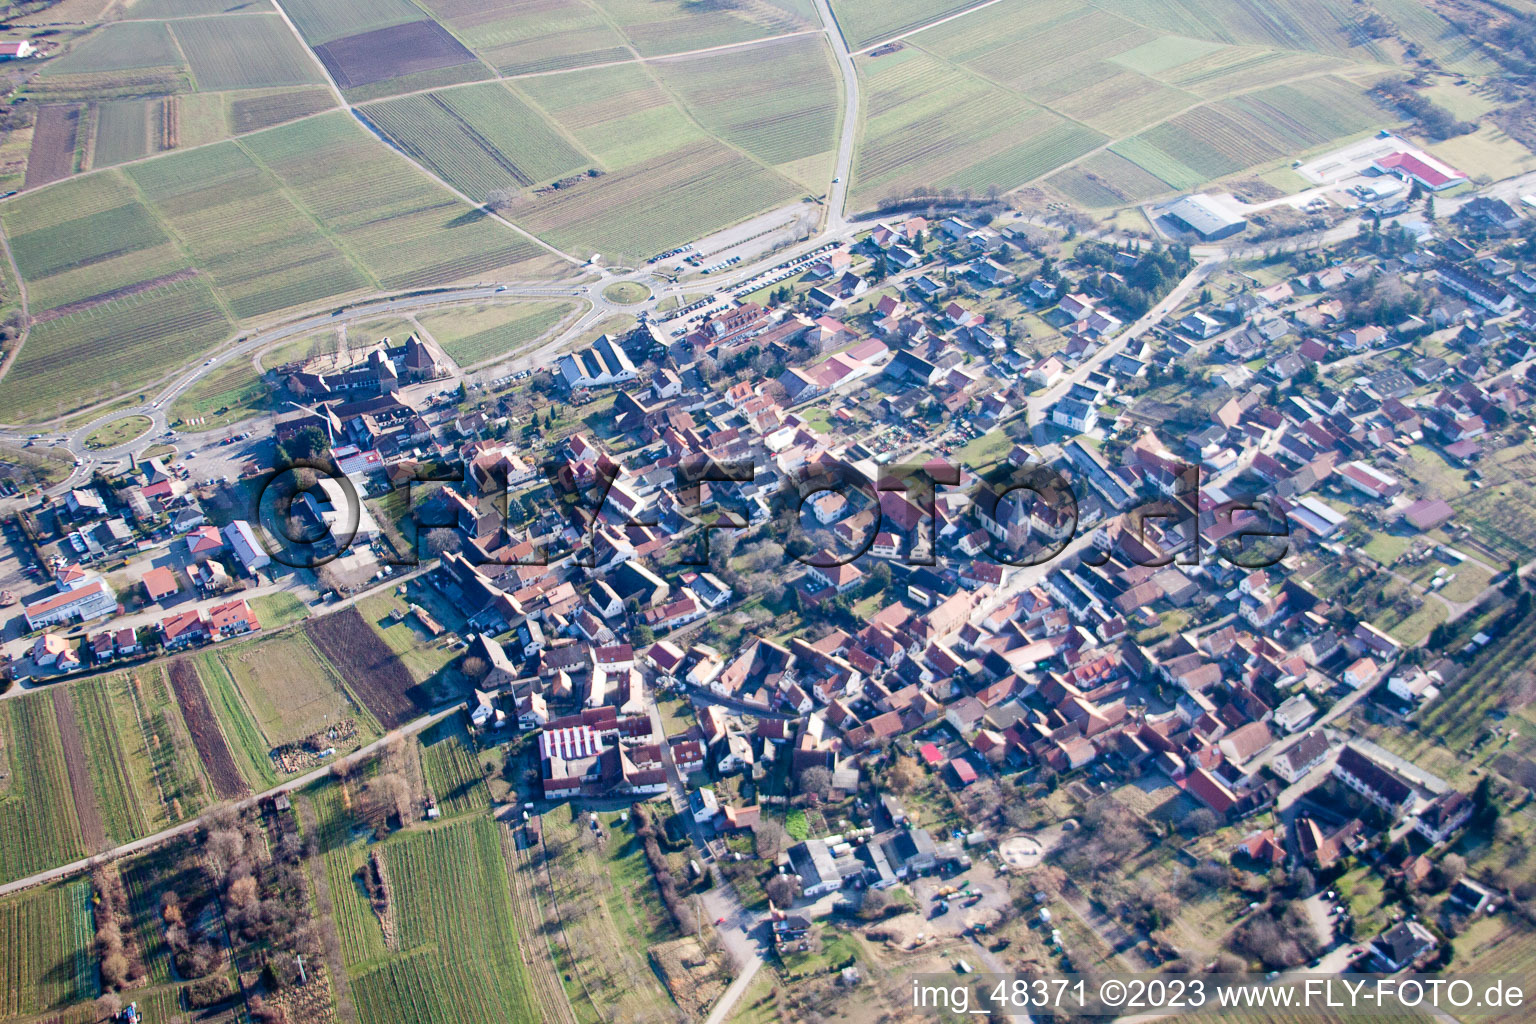 Quartier Schweigen in Schweigen-Rechtenbach dans le département Rhénanie-Palatinat, Allemagne vu d'un drone